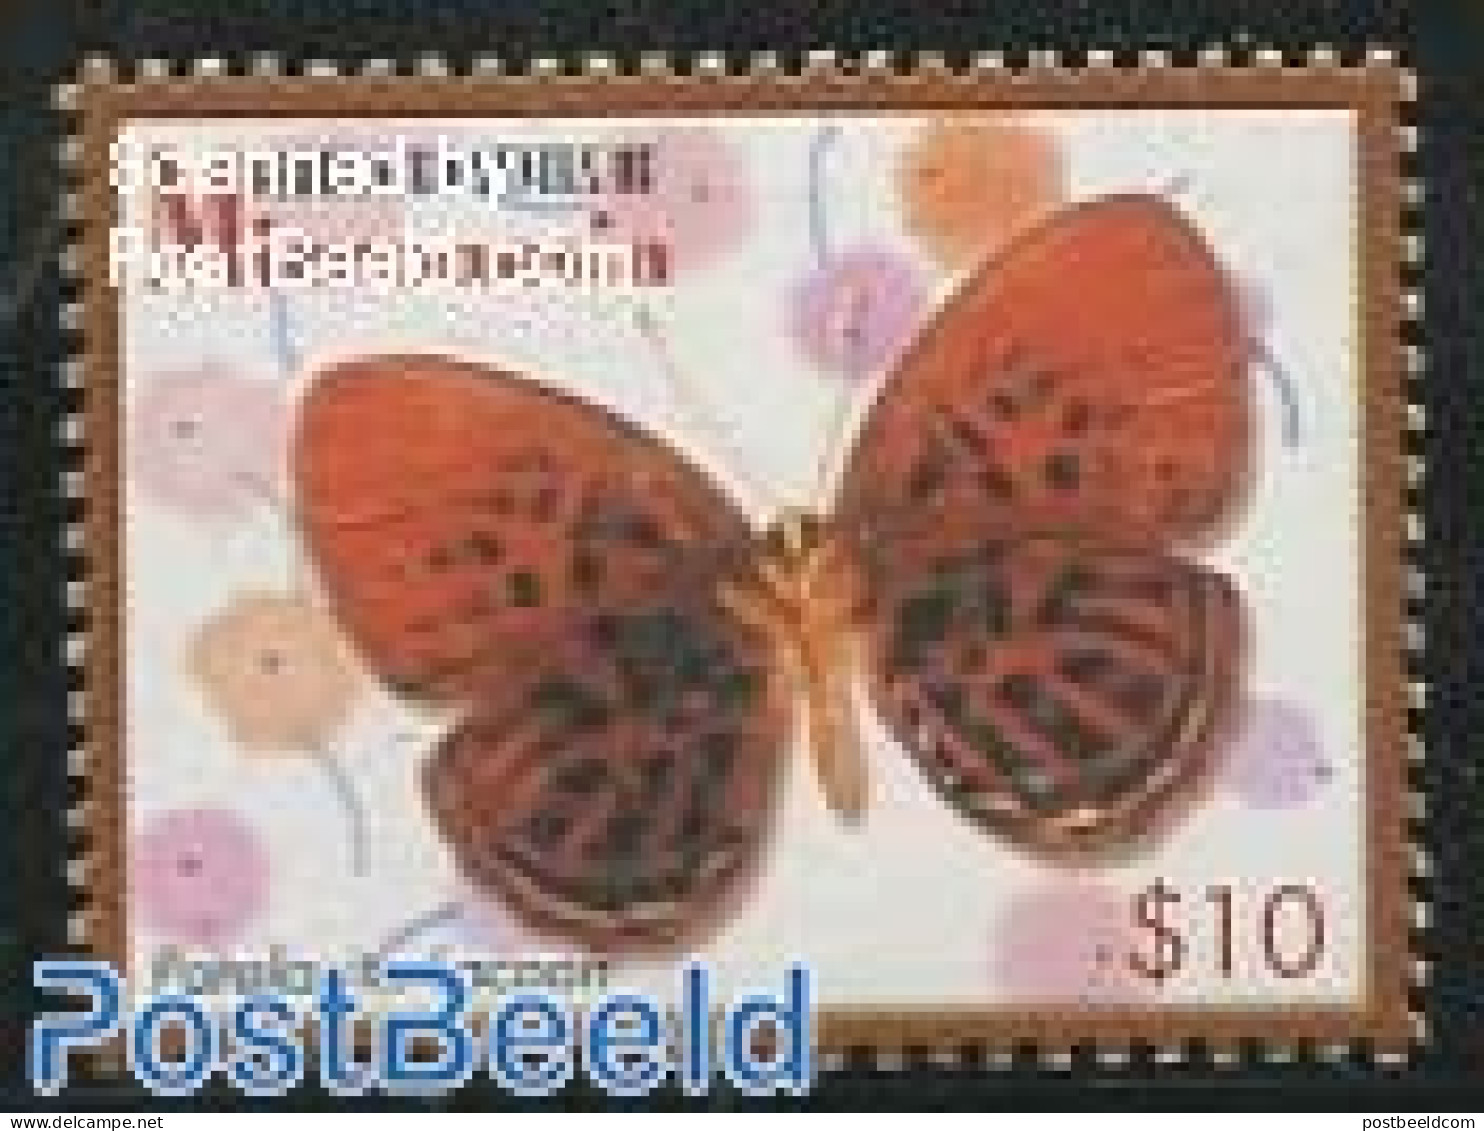 Micronesia 2006 Definitives, Butterflies 1v ($10), Mint NH, Nature - Butterflies - Micronésie